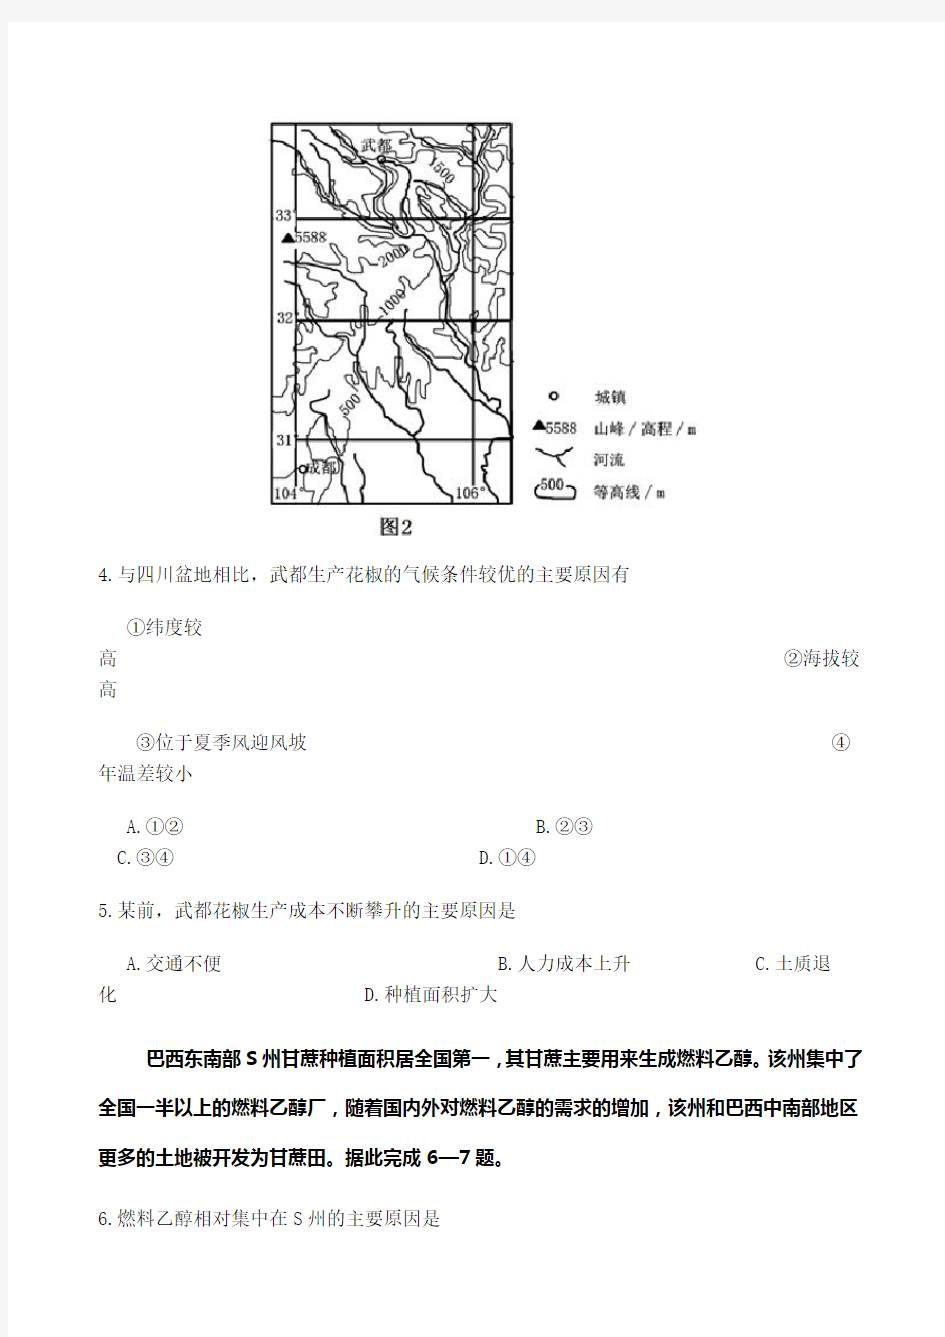 2013年高考文综地理(海南卷)